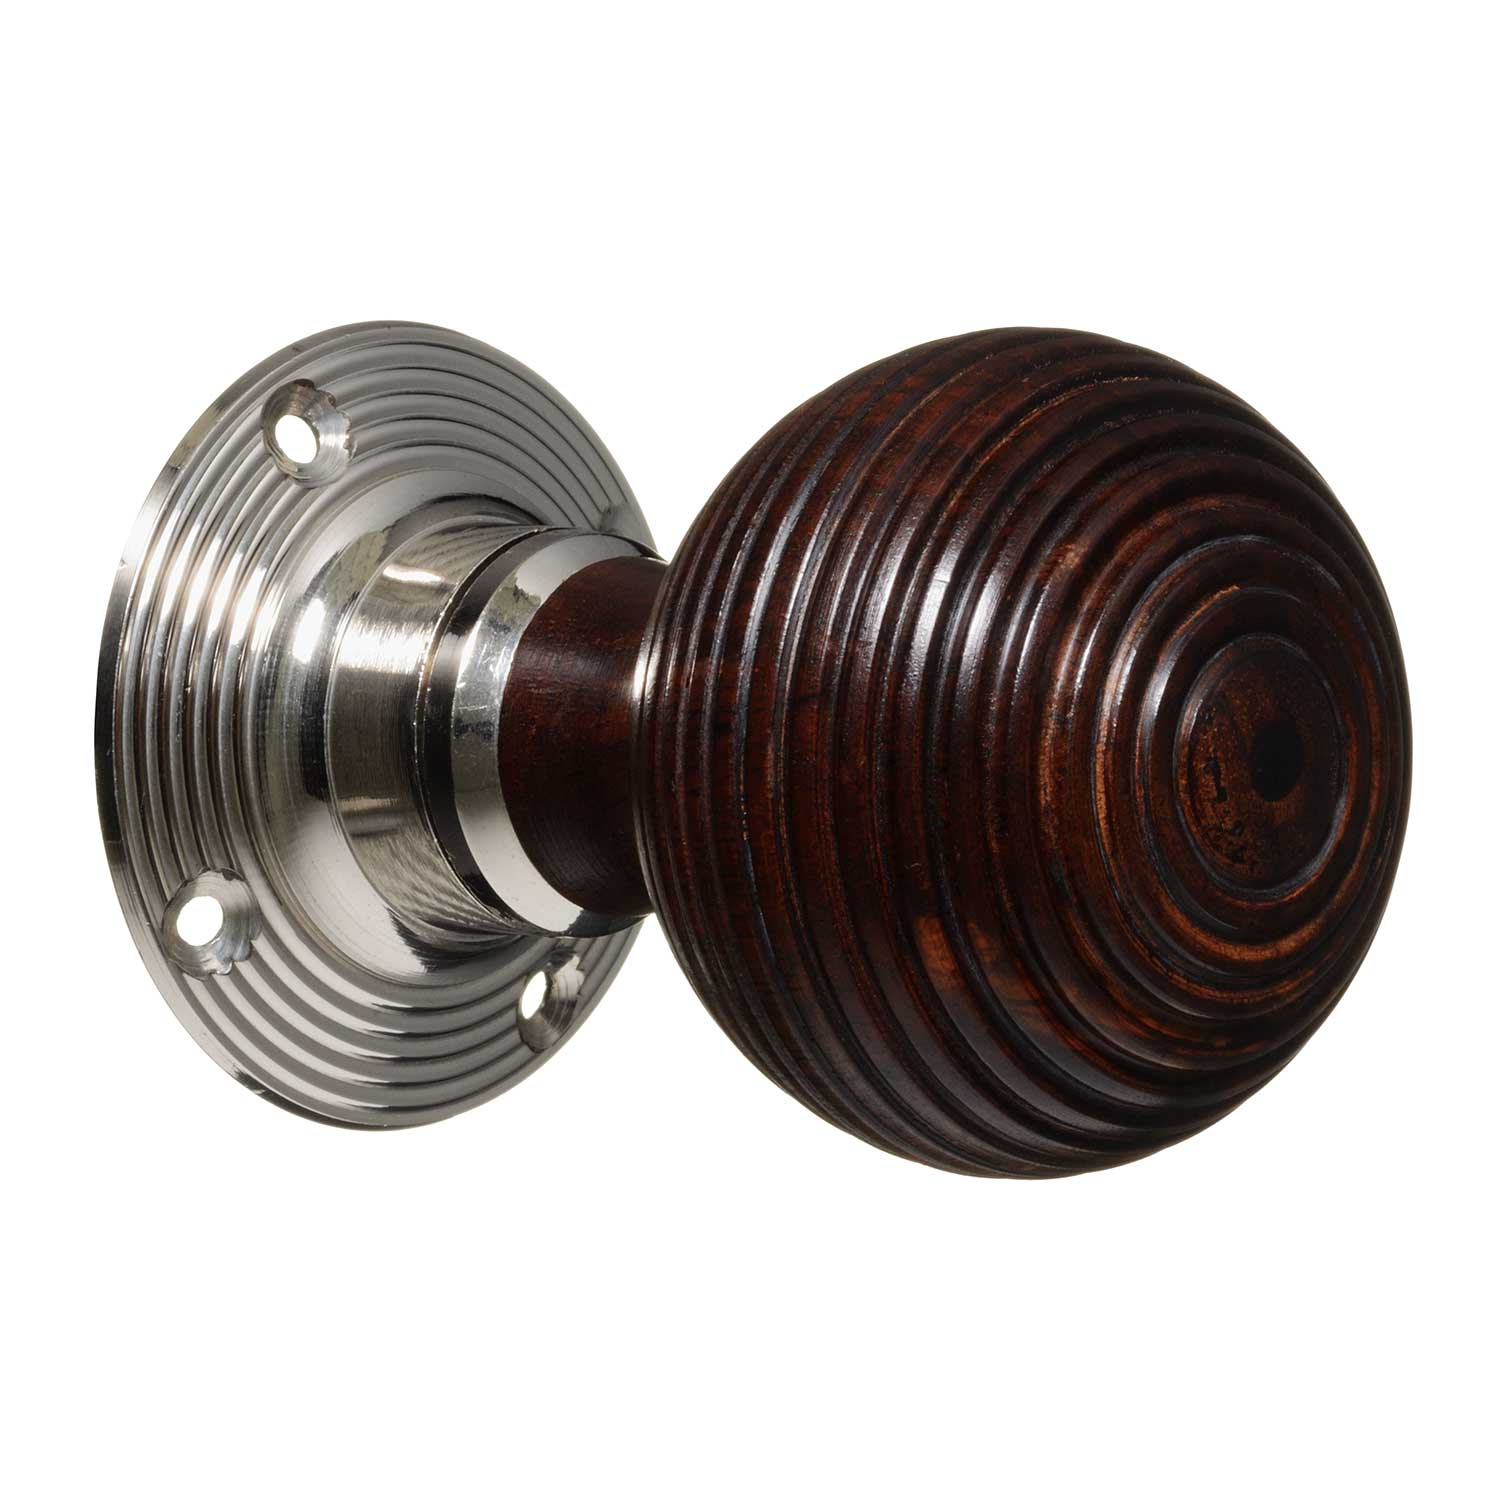 Hardwood Beehive - Nickel (pair) - Victorian Door Knobs